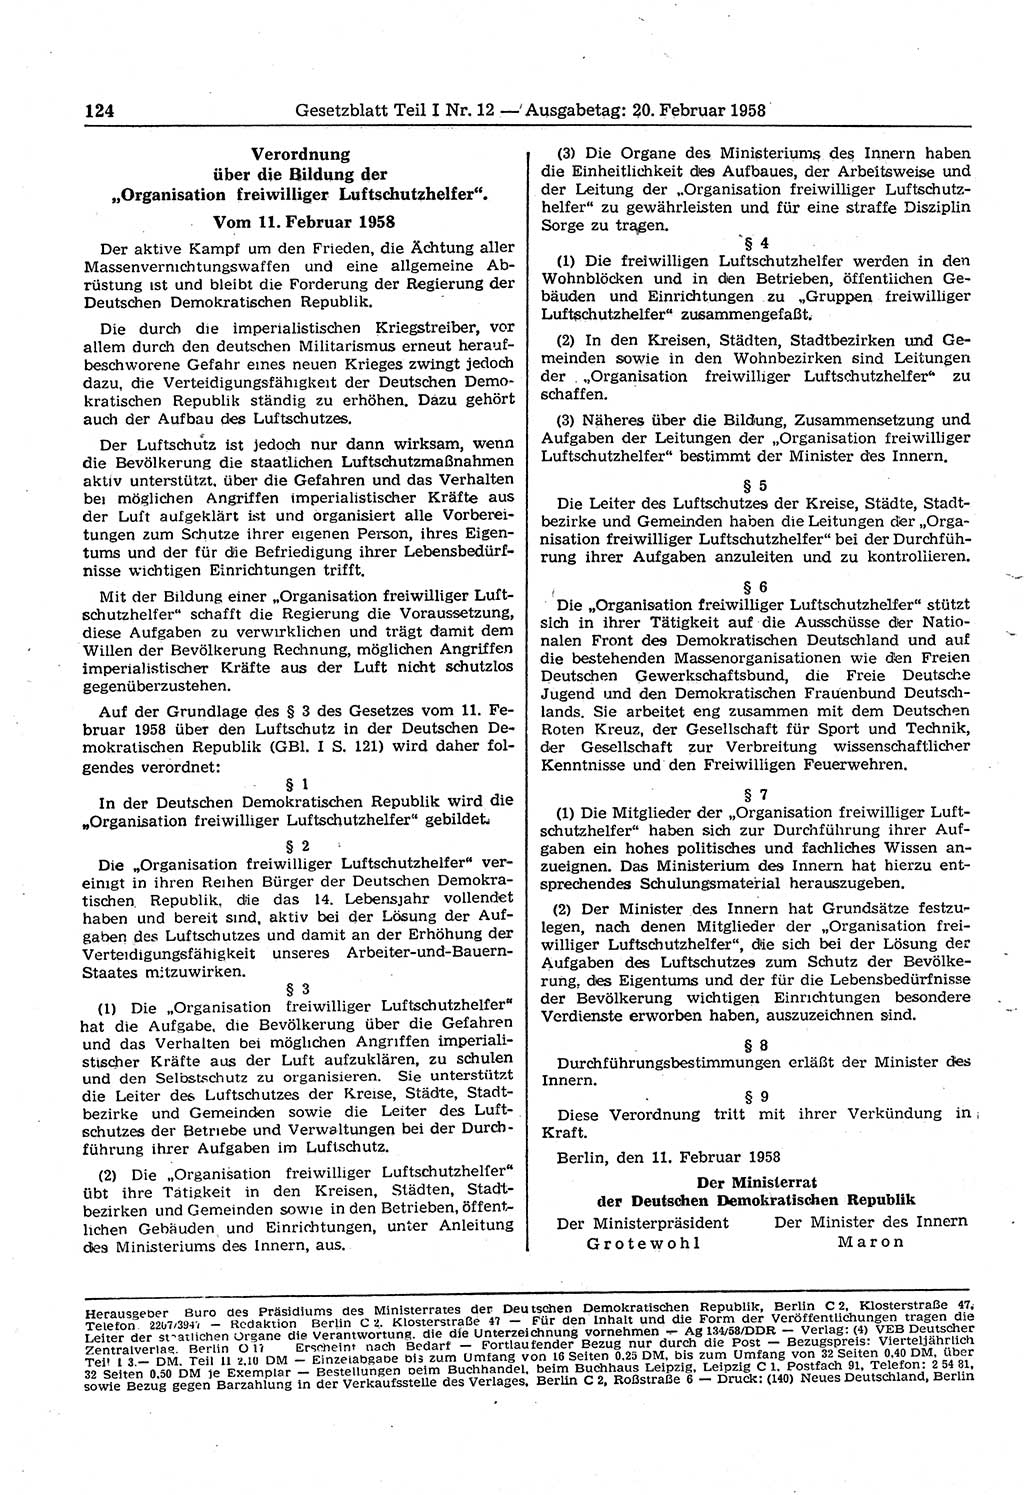 Gesetzblatt (GBl.) der Deutschen Demokratischen Republik (DDR) Teil Ⅰ 1958, Seite 124 (GBl. DDR Ⅰ 1958, S. 124)